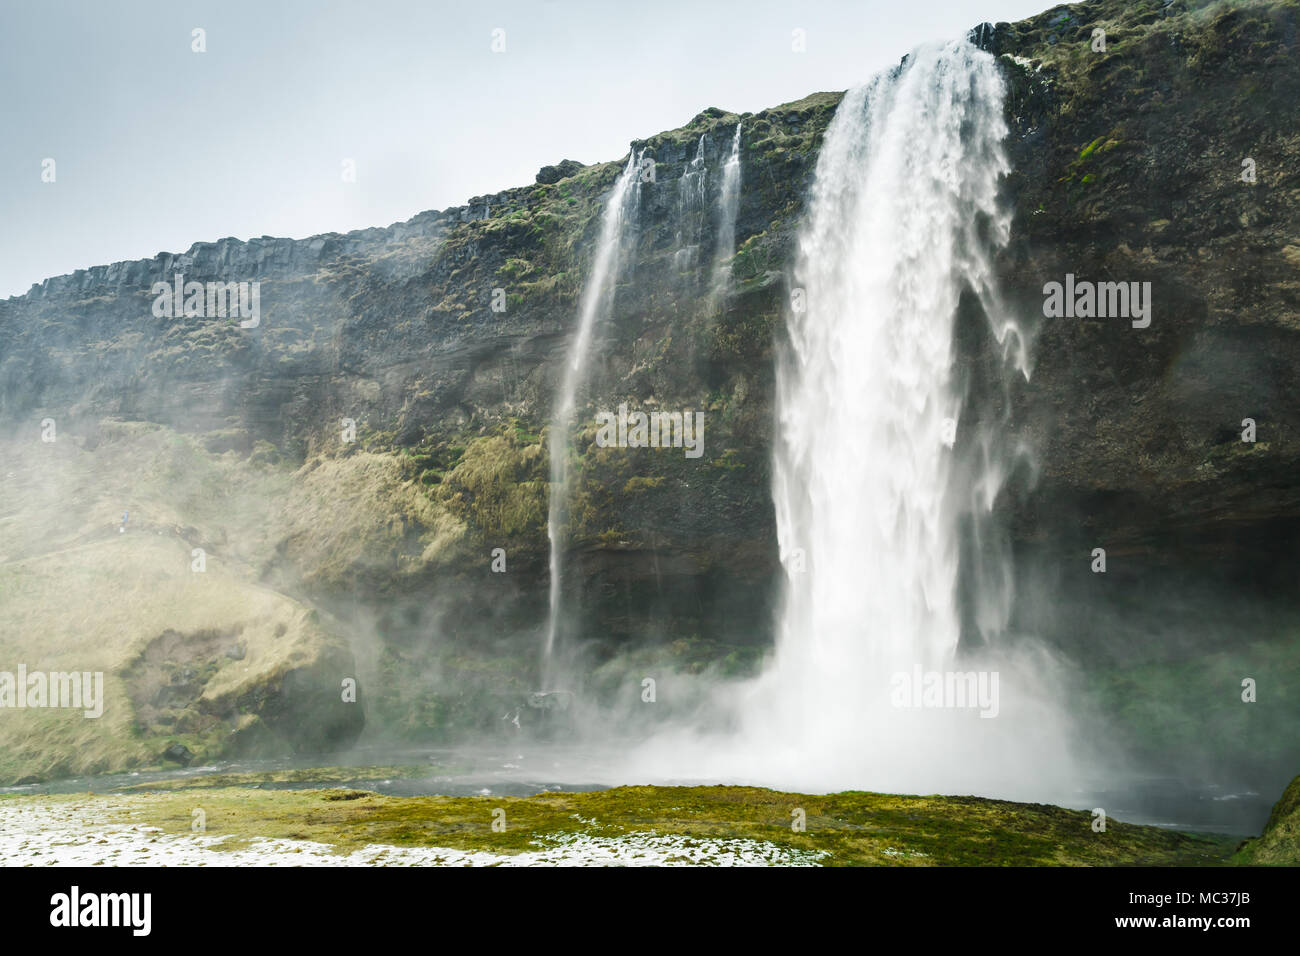 Seljalandfoss paysage cascade, l'un des plus populaires repère naturel de la nature islandaise Banque D'Images